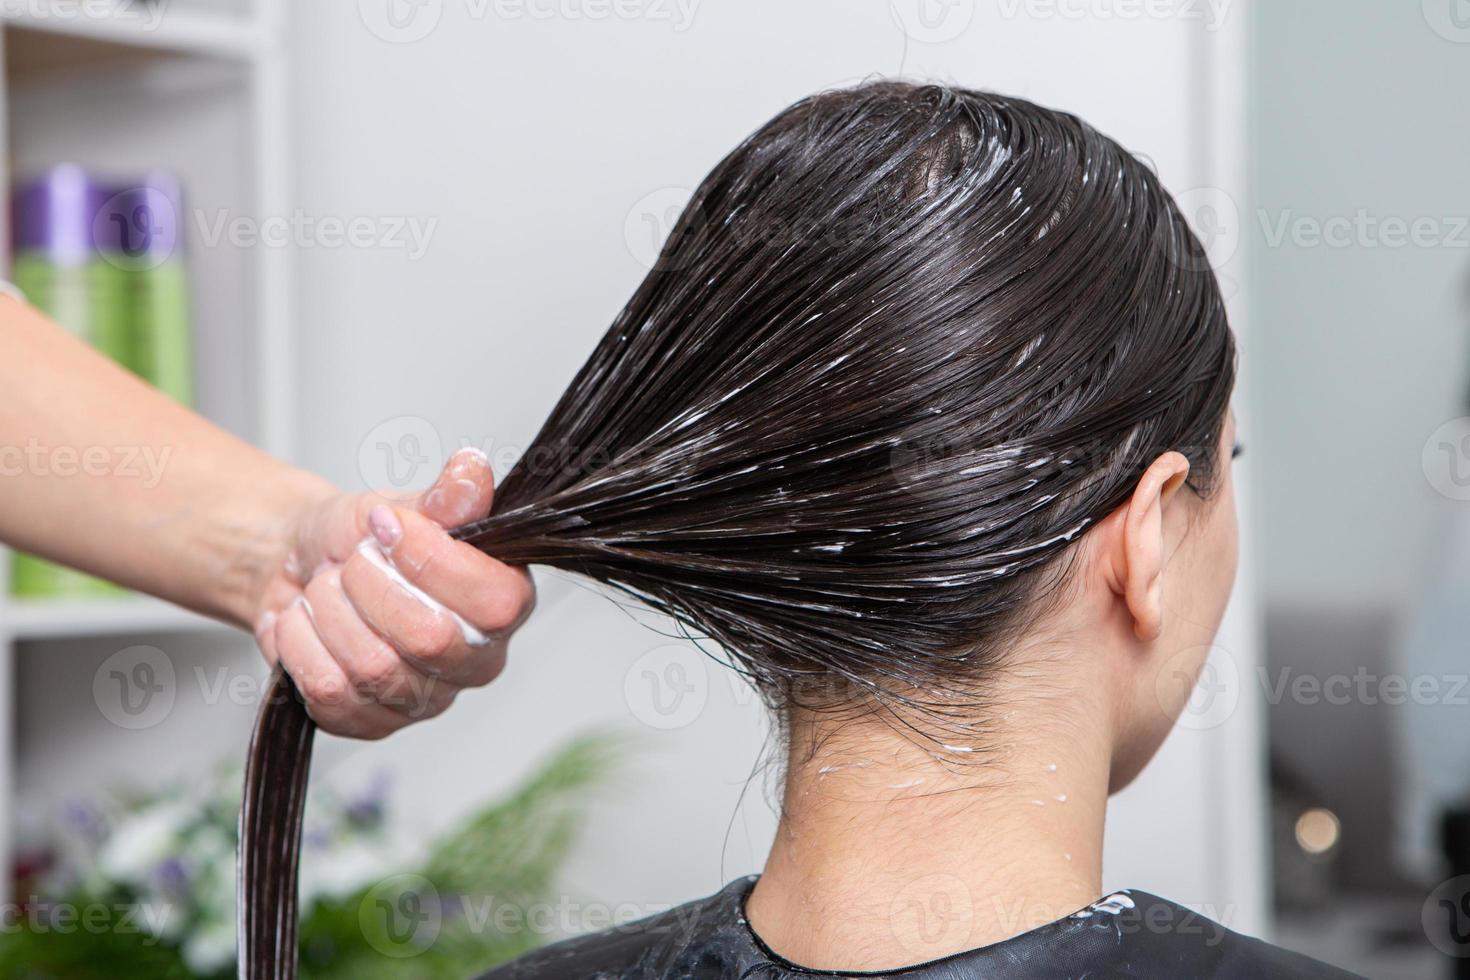 le coiffeur applique un masque capillaire sur les cheveux noirs raides. soins capillaires au salon de beauté. photo